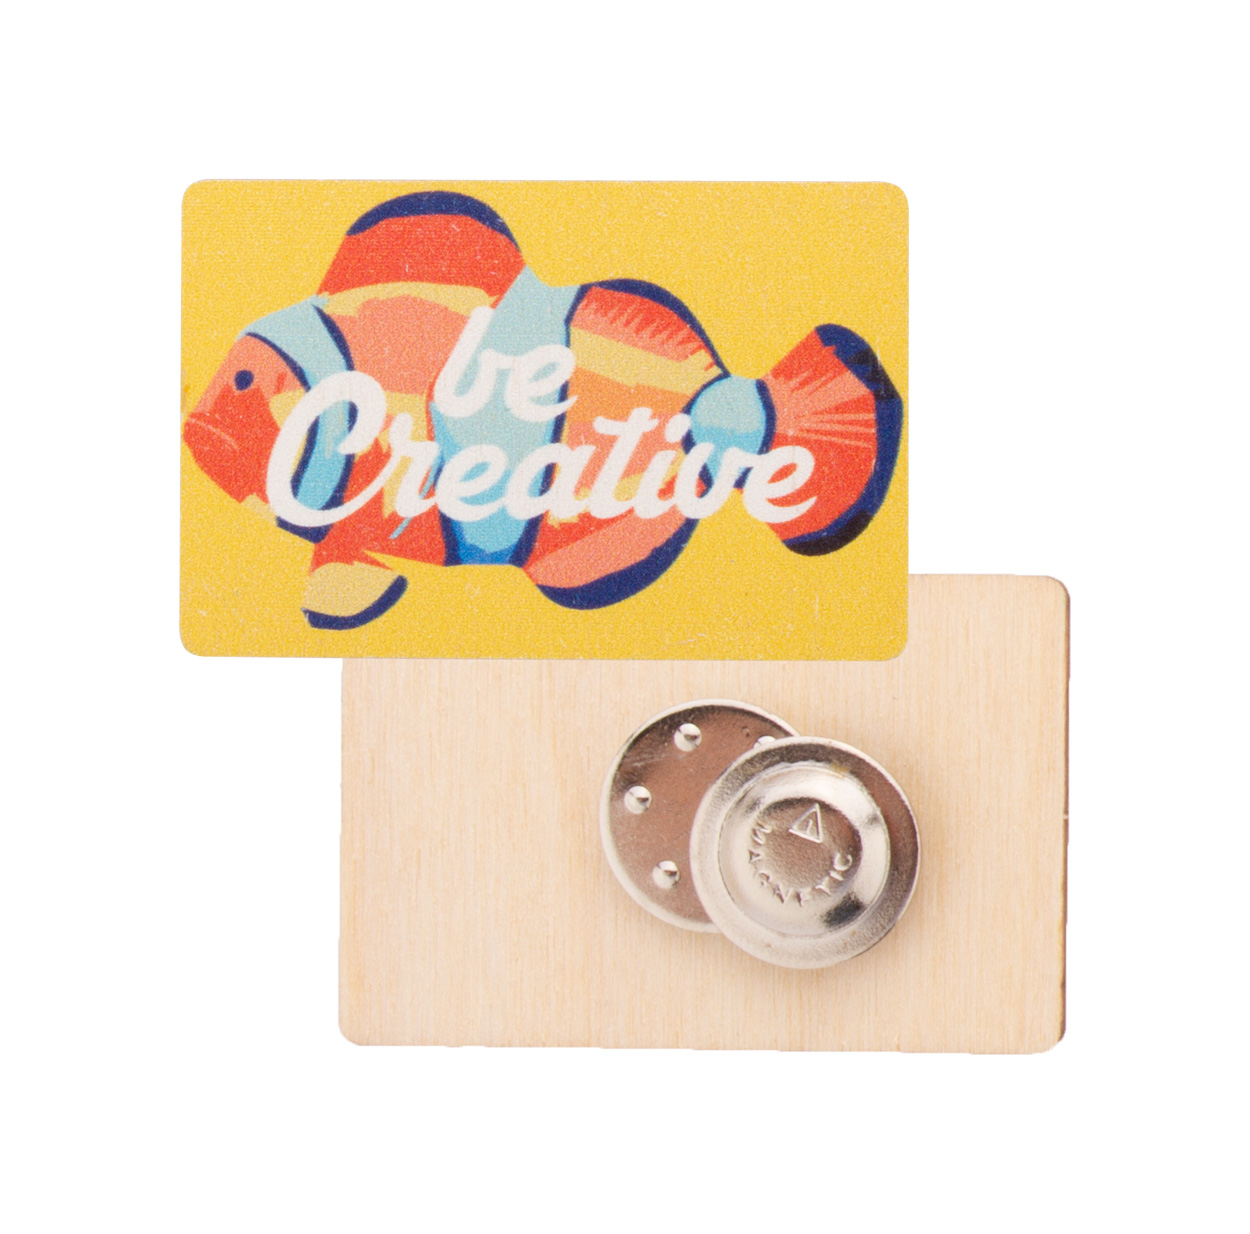 WooBadge odznak s magnetem na zakázku - béžová